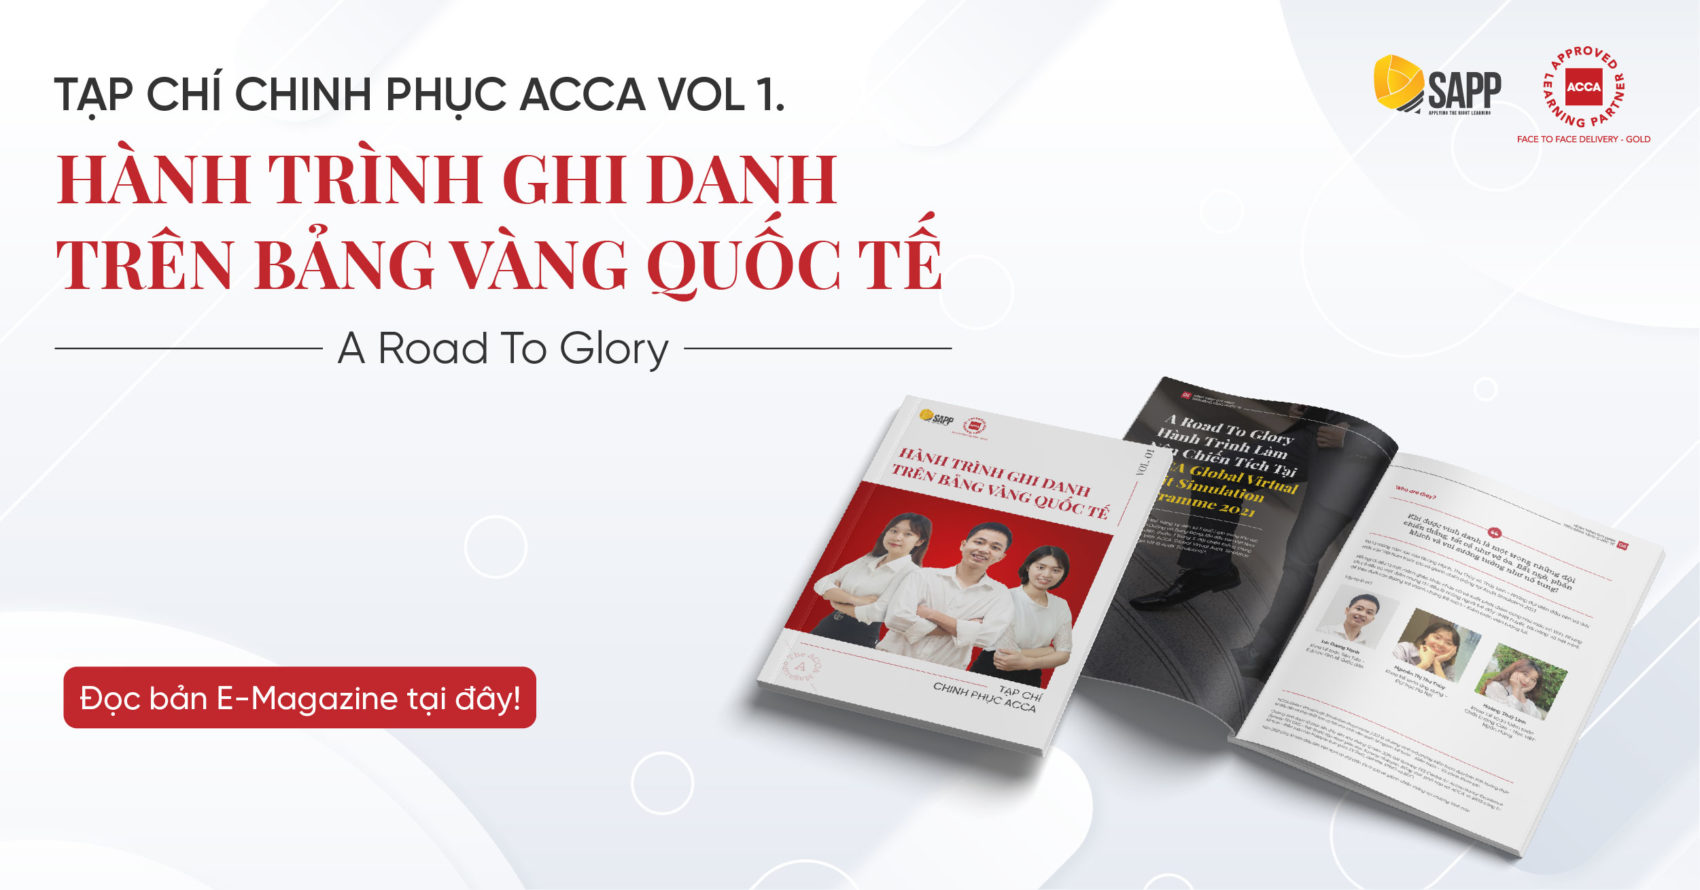 Tạp chí ACCA Volume 1: Hành trình ghi danh trên bảng vàng quốc tế